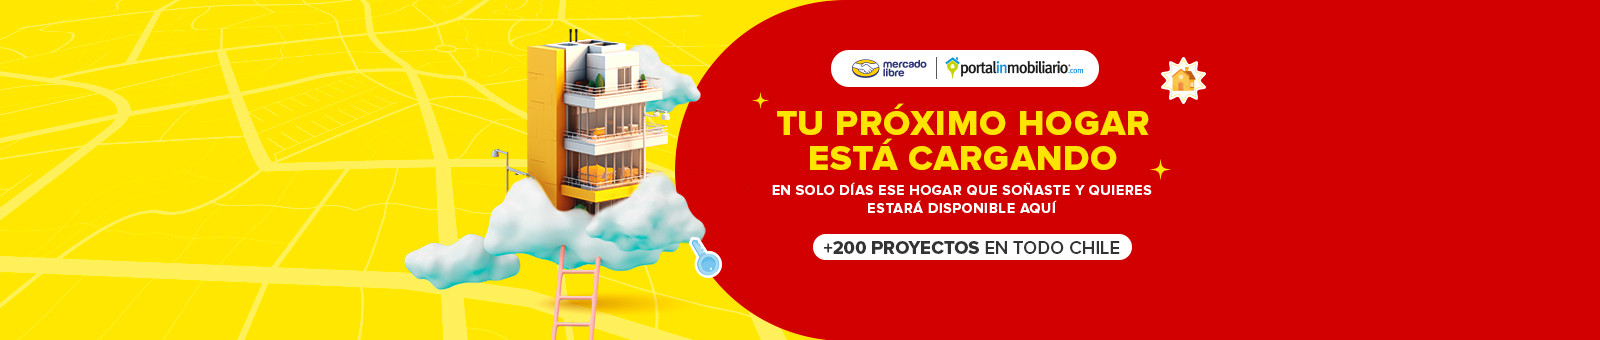 Precyber, + 200 proyectos en todo chile